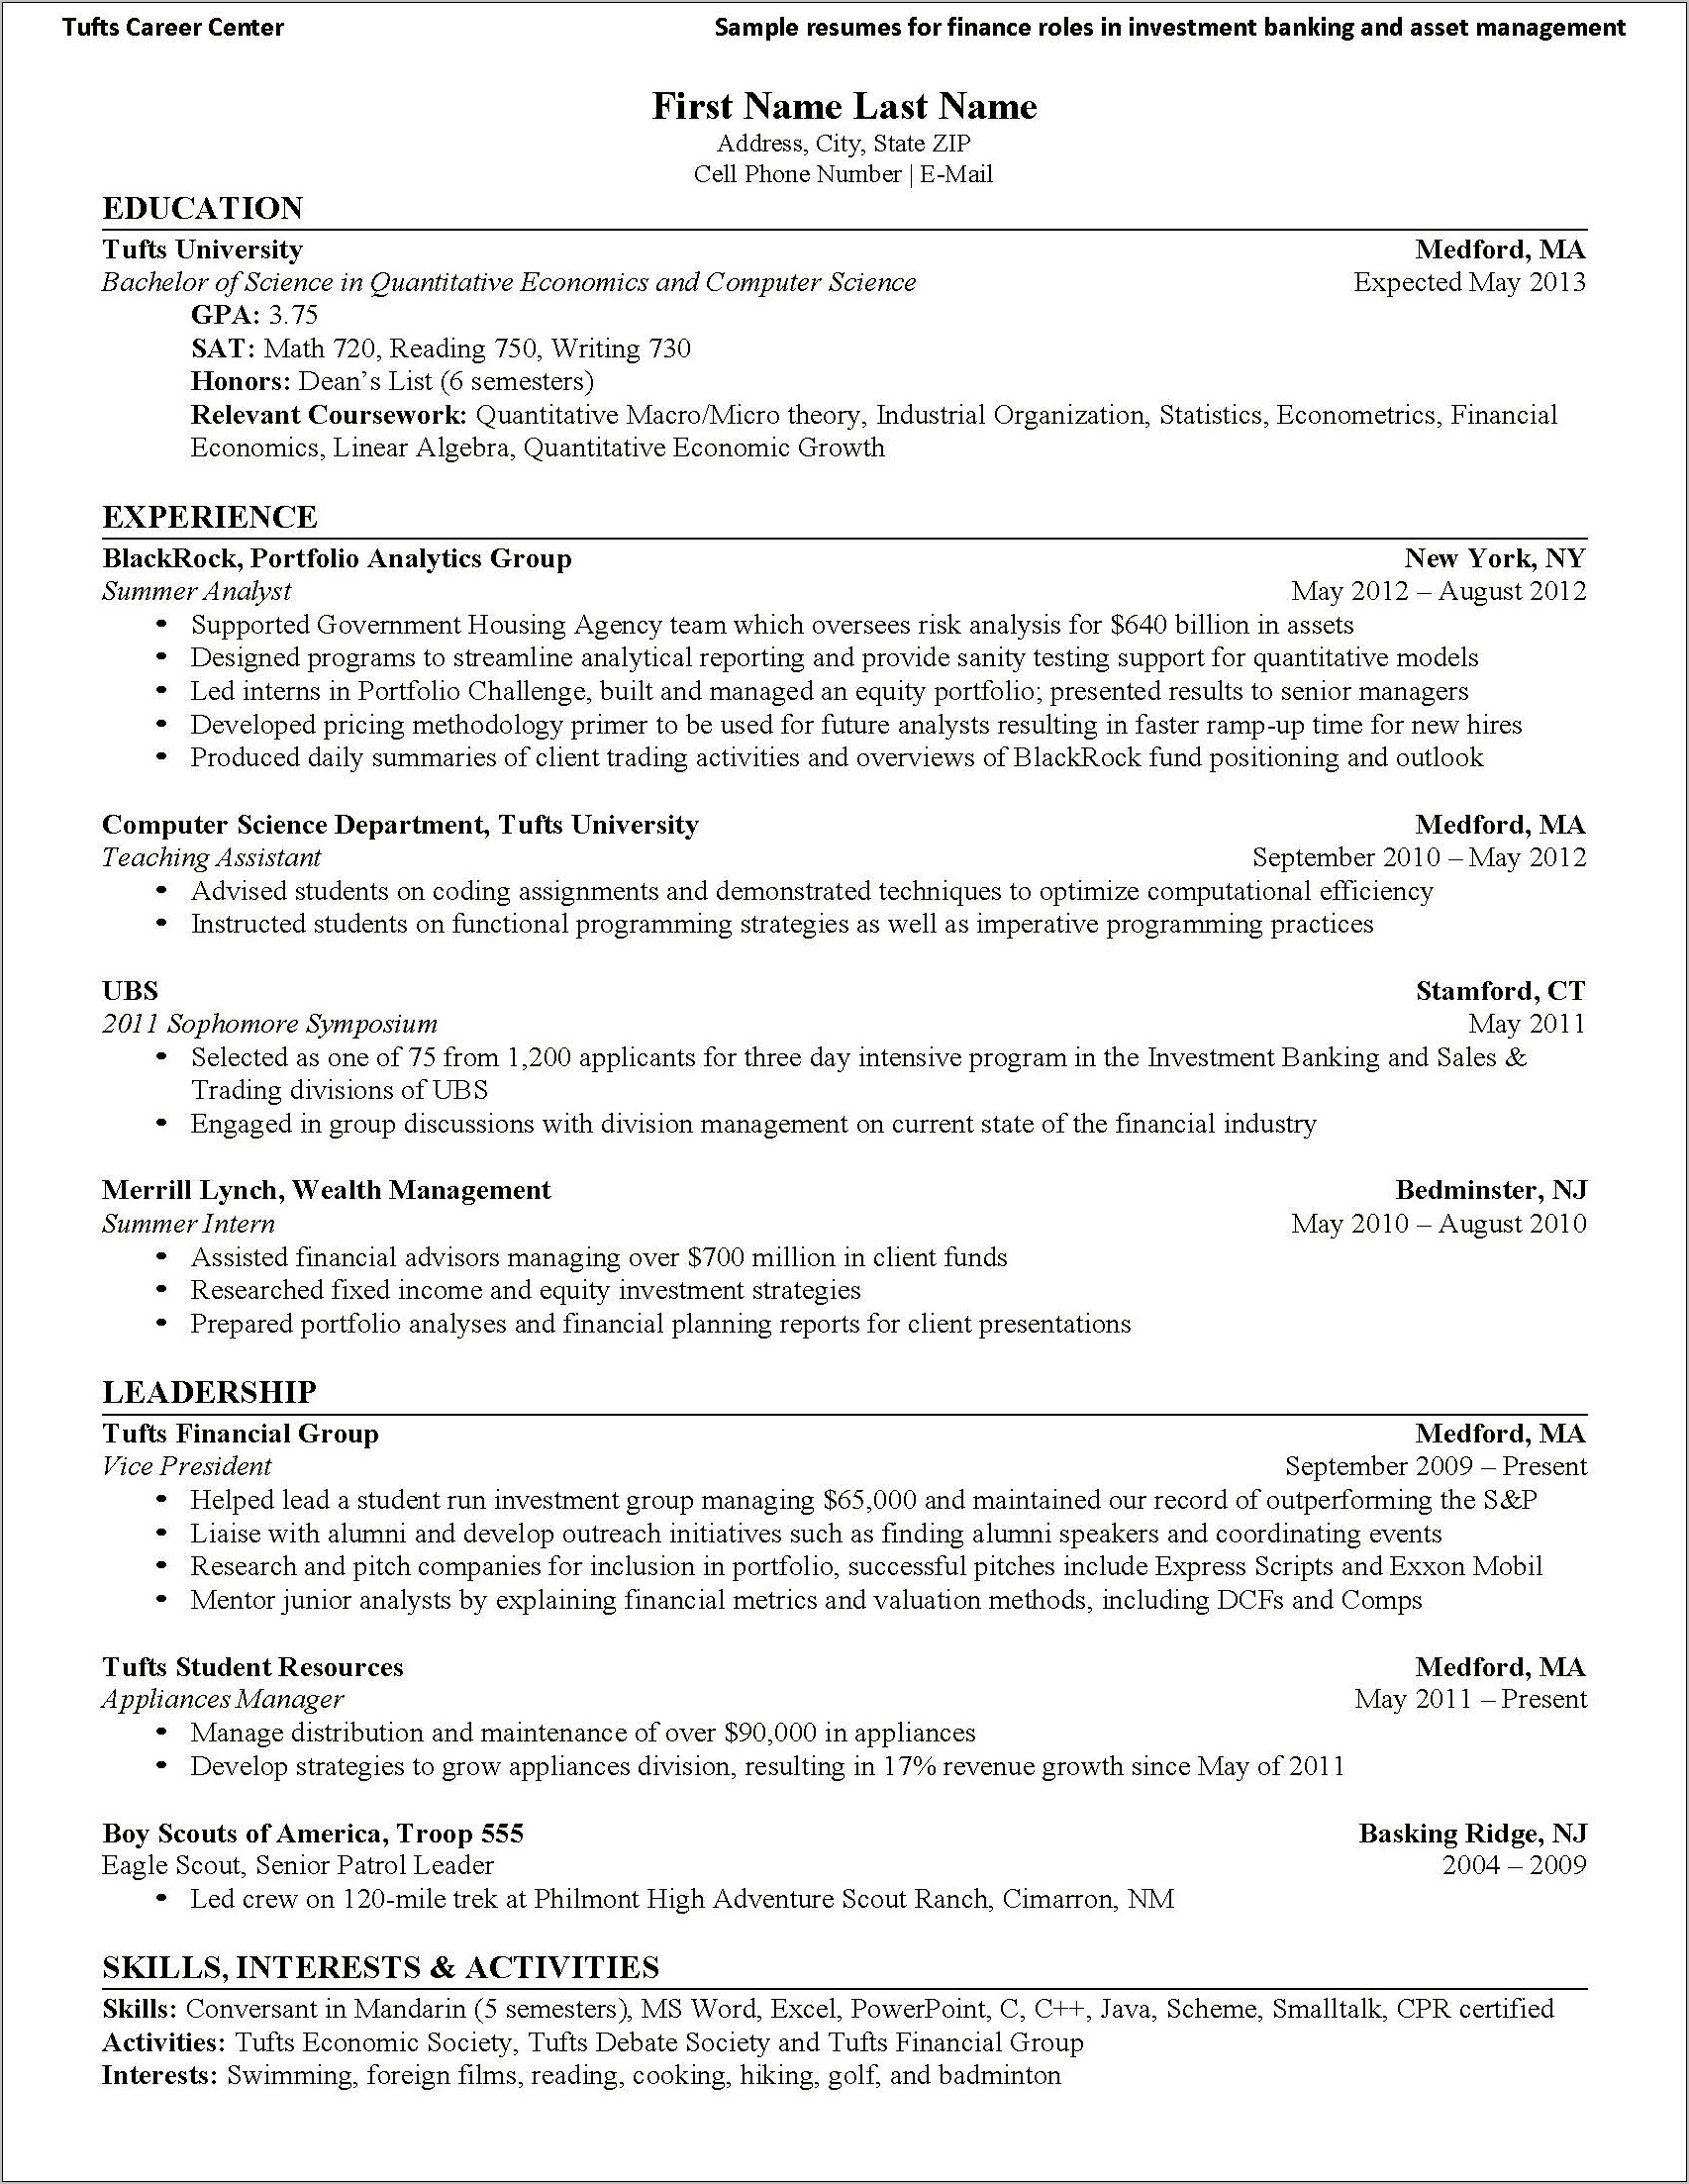 Sample Resume Of Equity Advisor